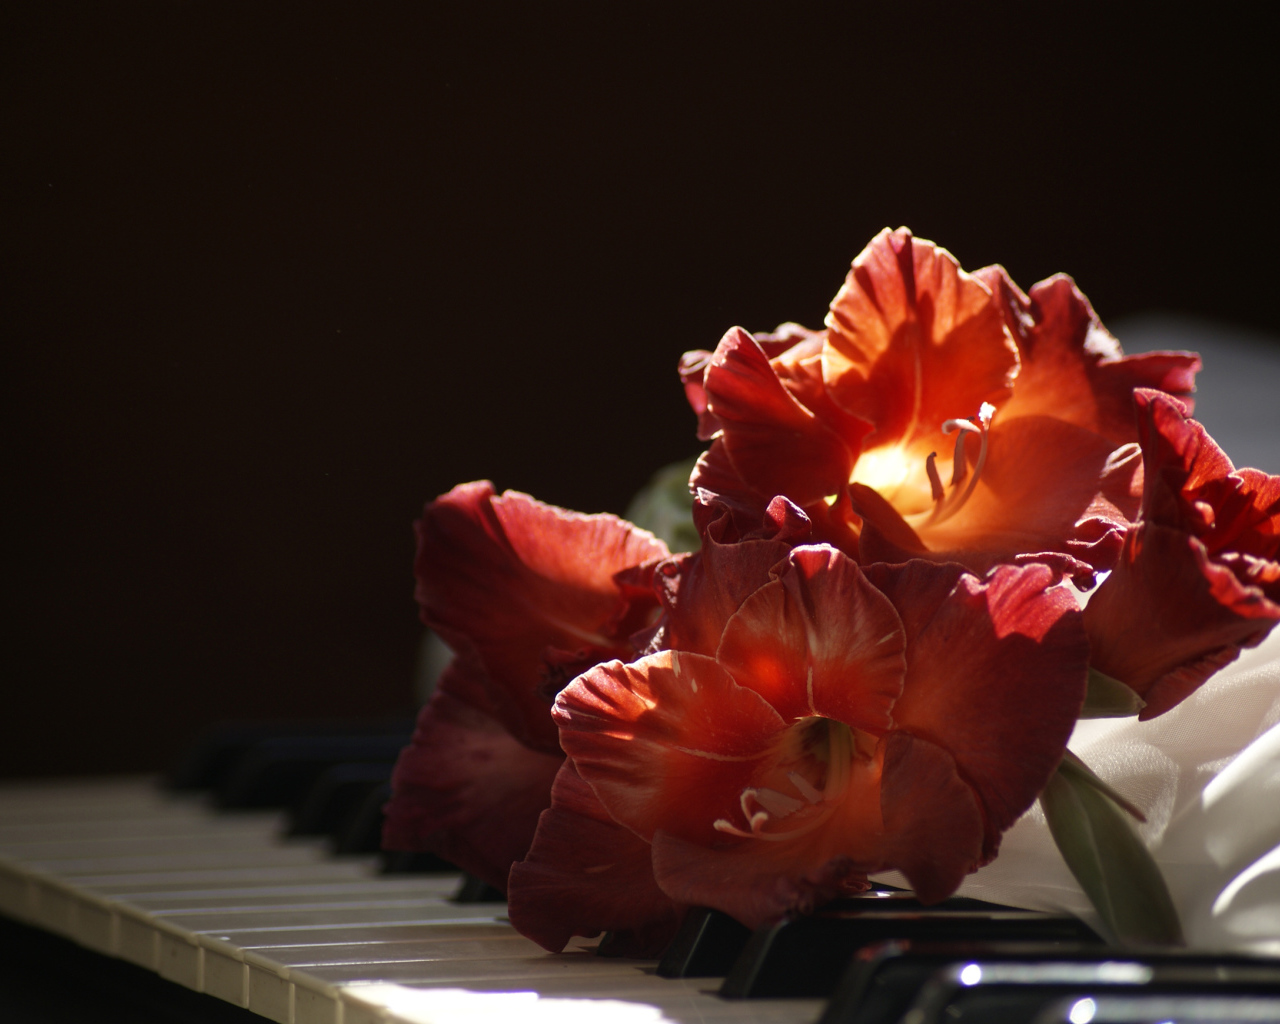 Красный гладиолус лежит на клавишах пианино